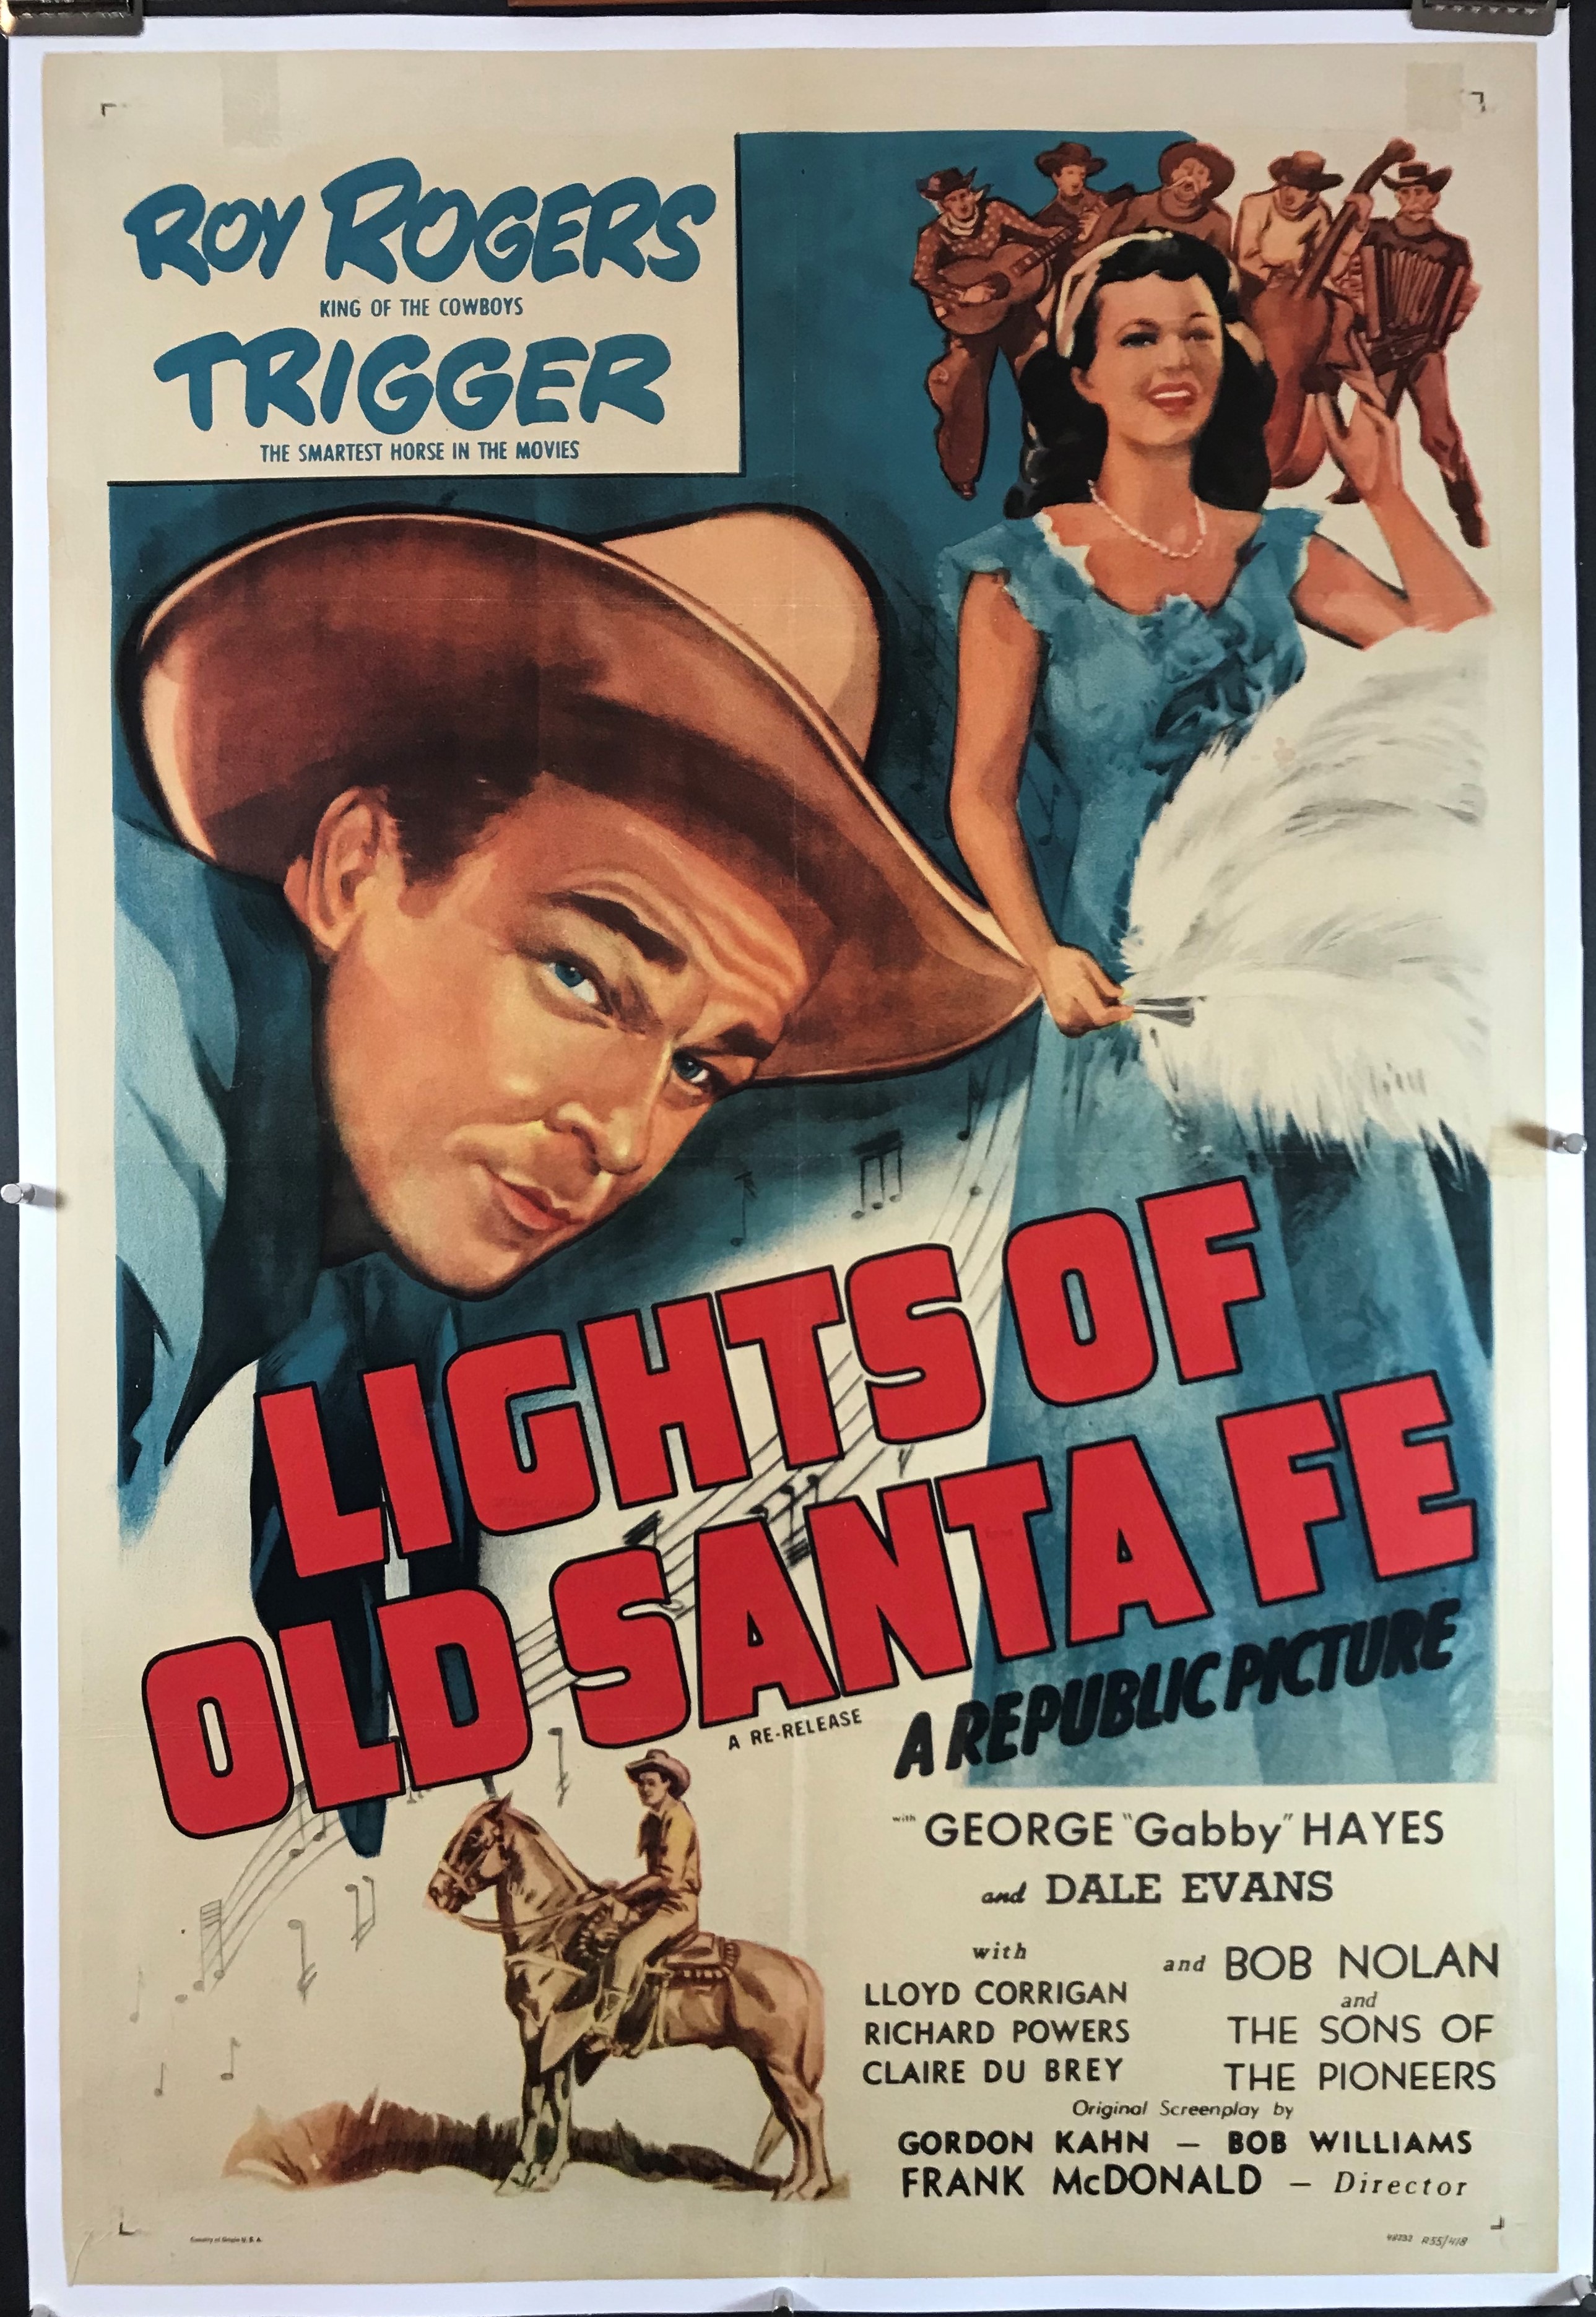 Western Movie Posters